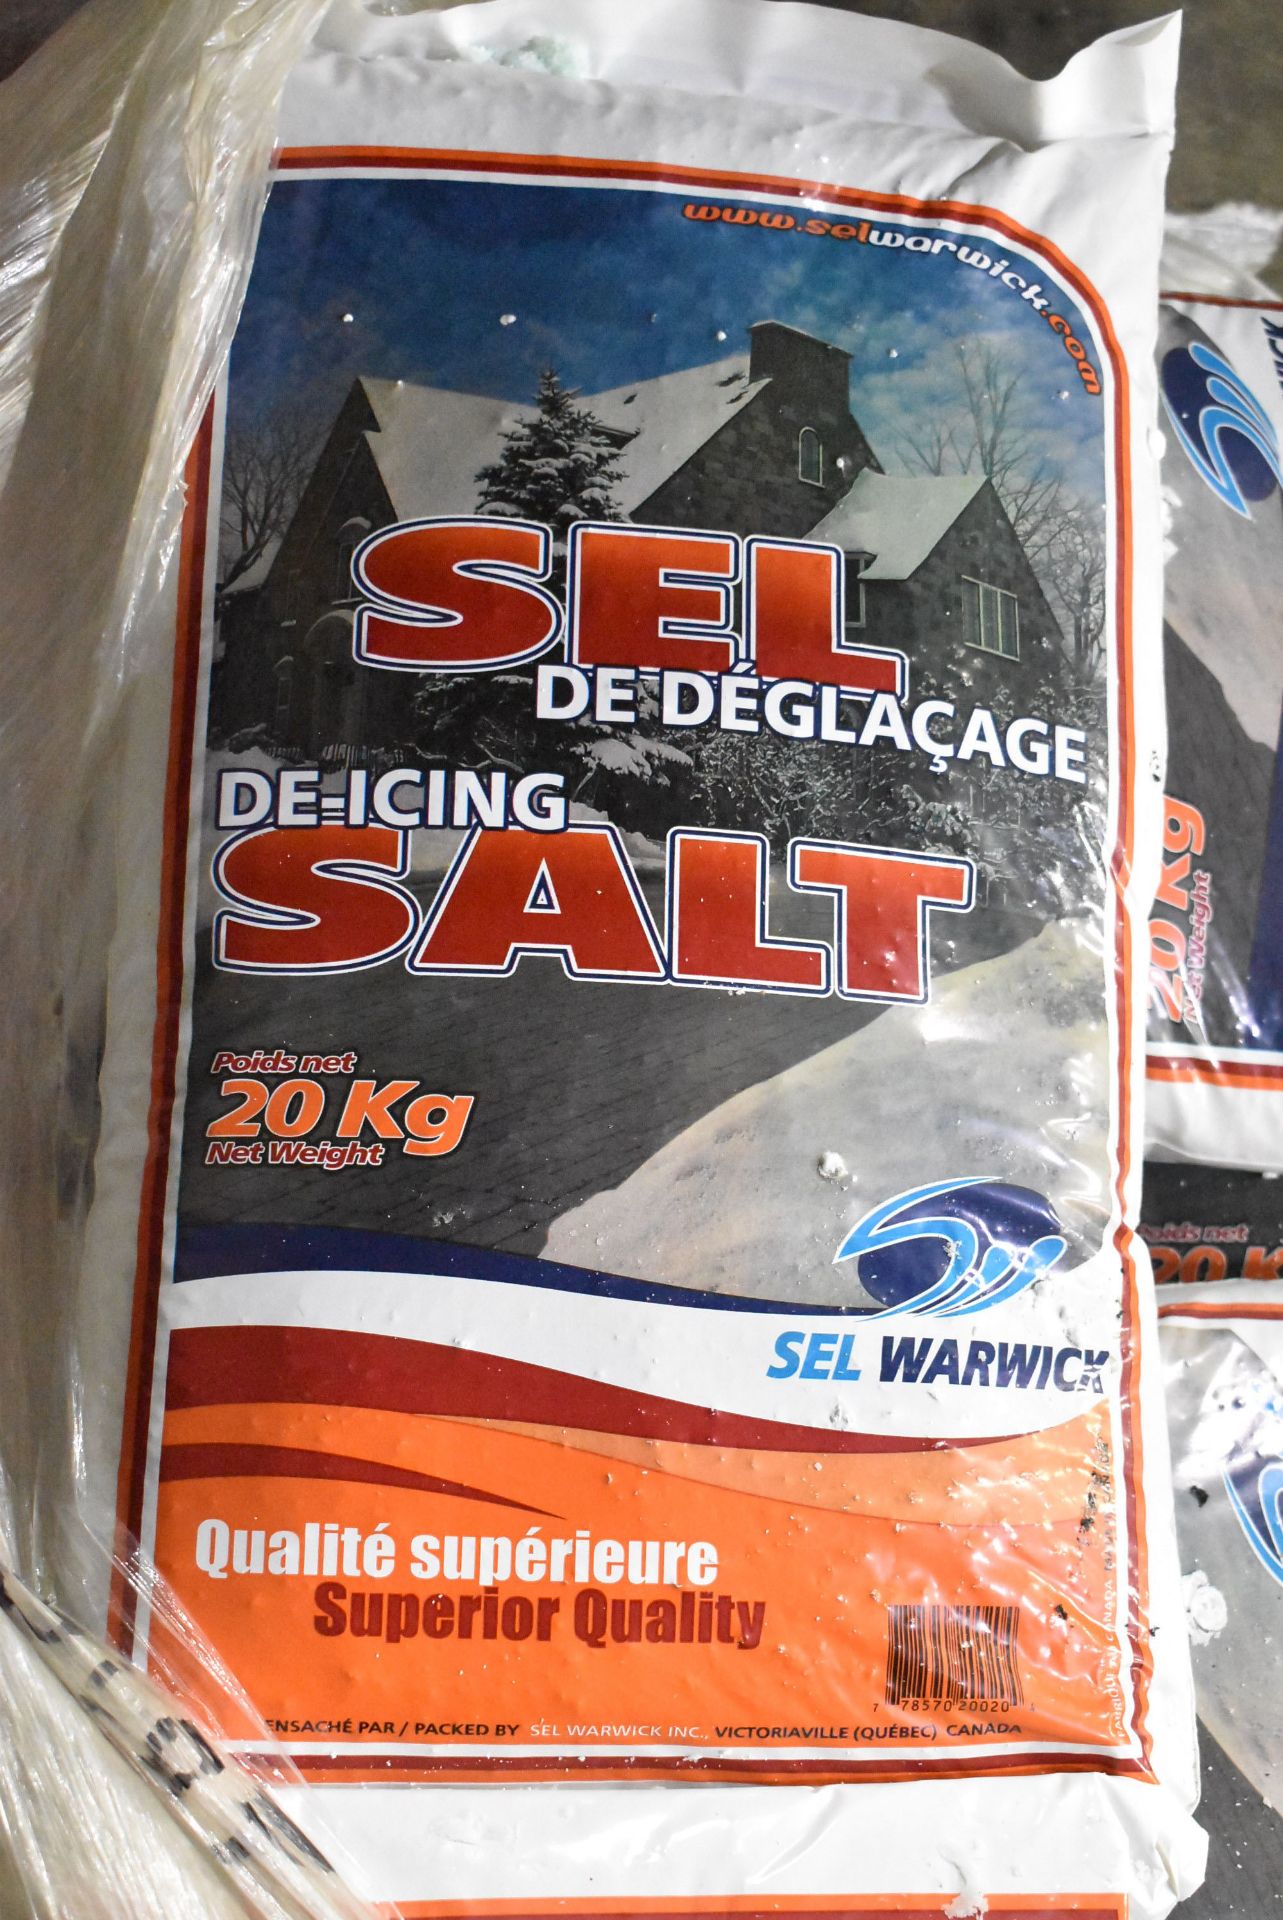 LOT/ SKID OF DE-ICING SALT - Image 2 of 2